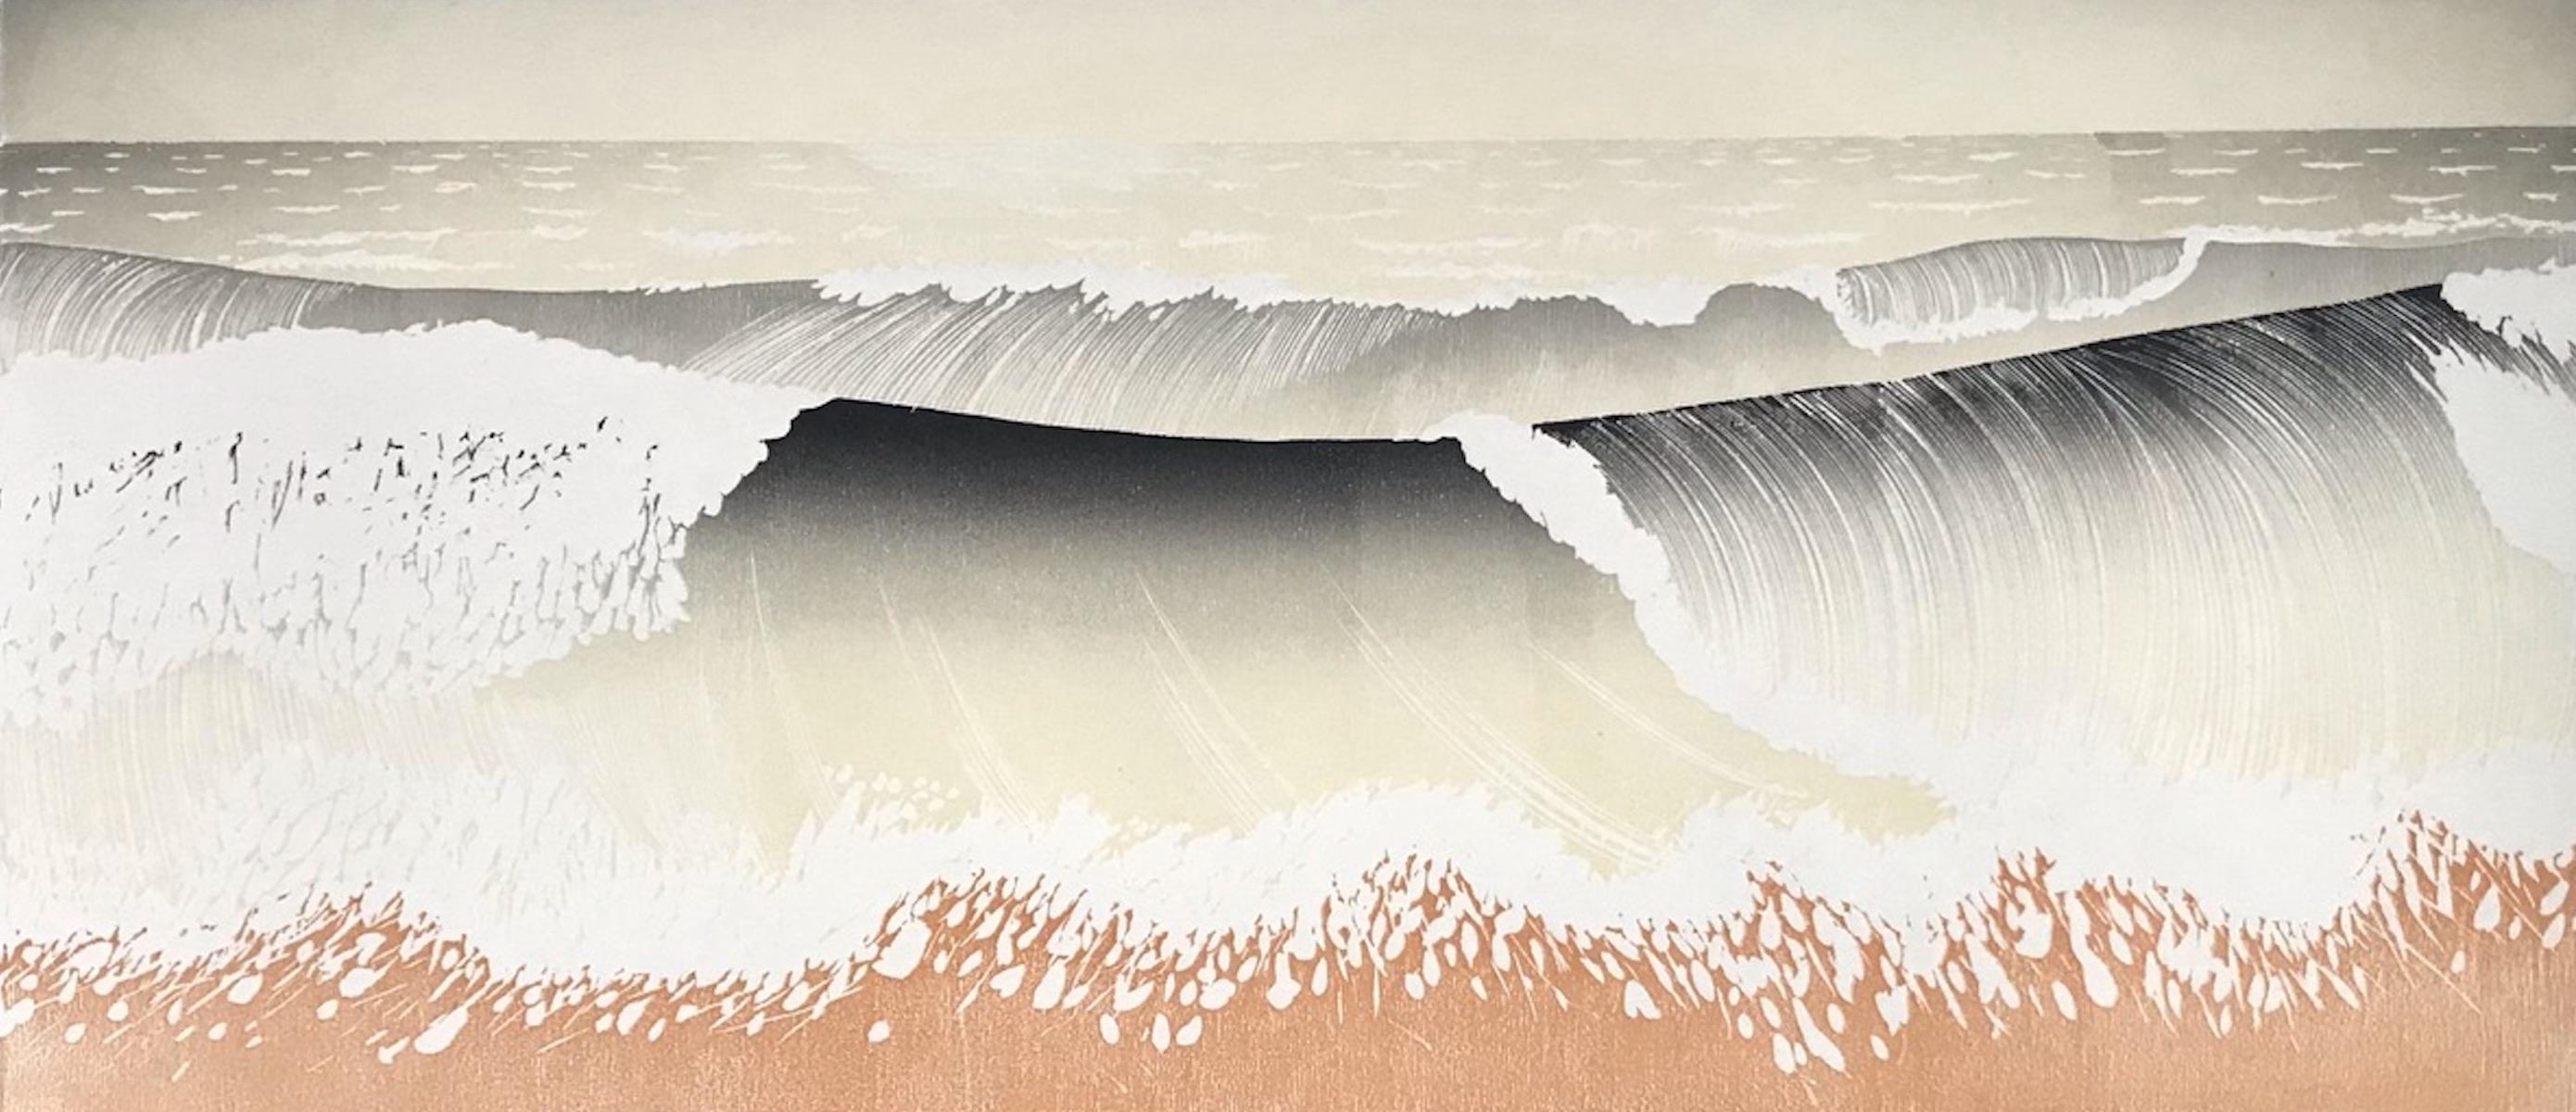 Roter Sand, Holzschnitt, Druck im traditionellen japanischen Stil, Strandhauskunst